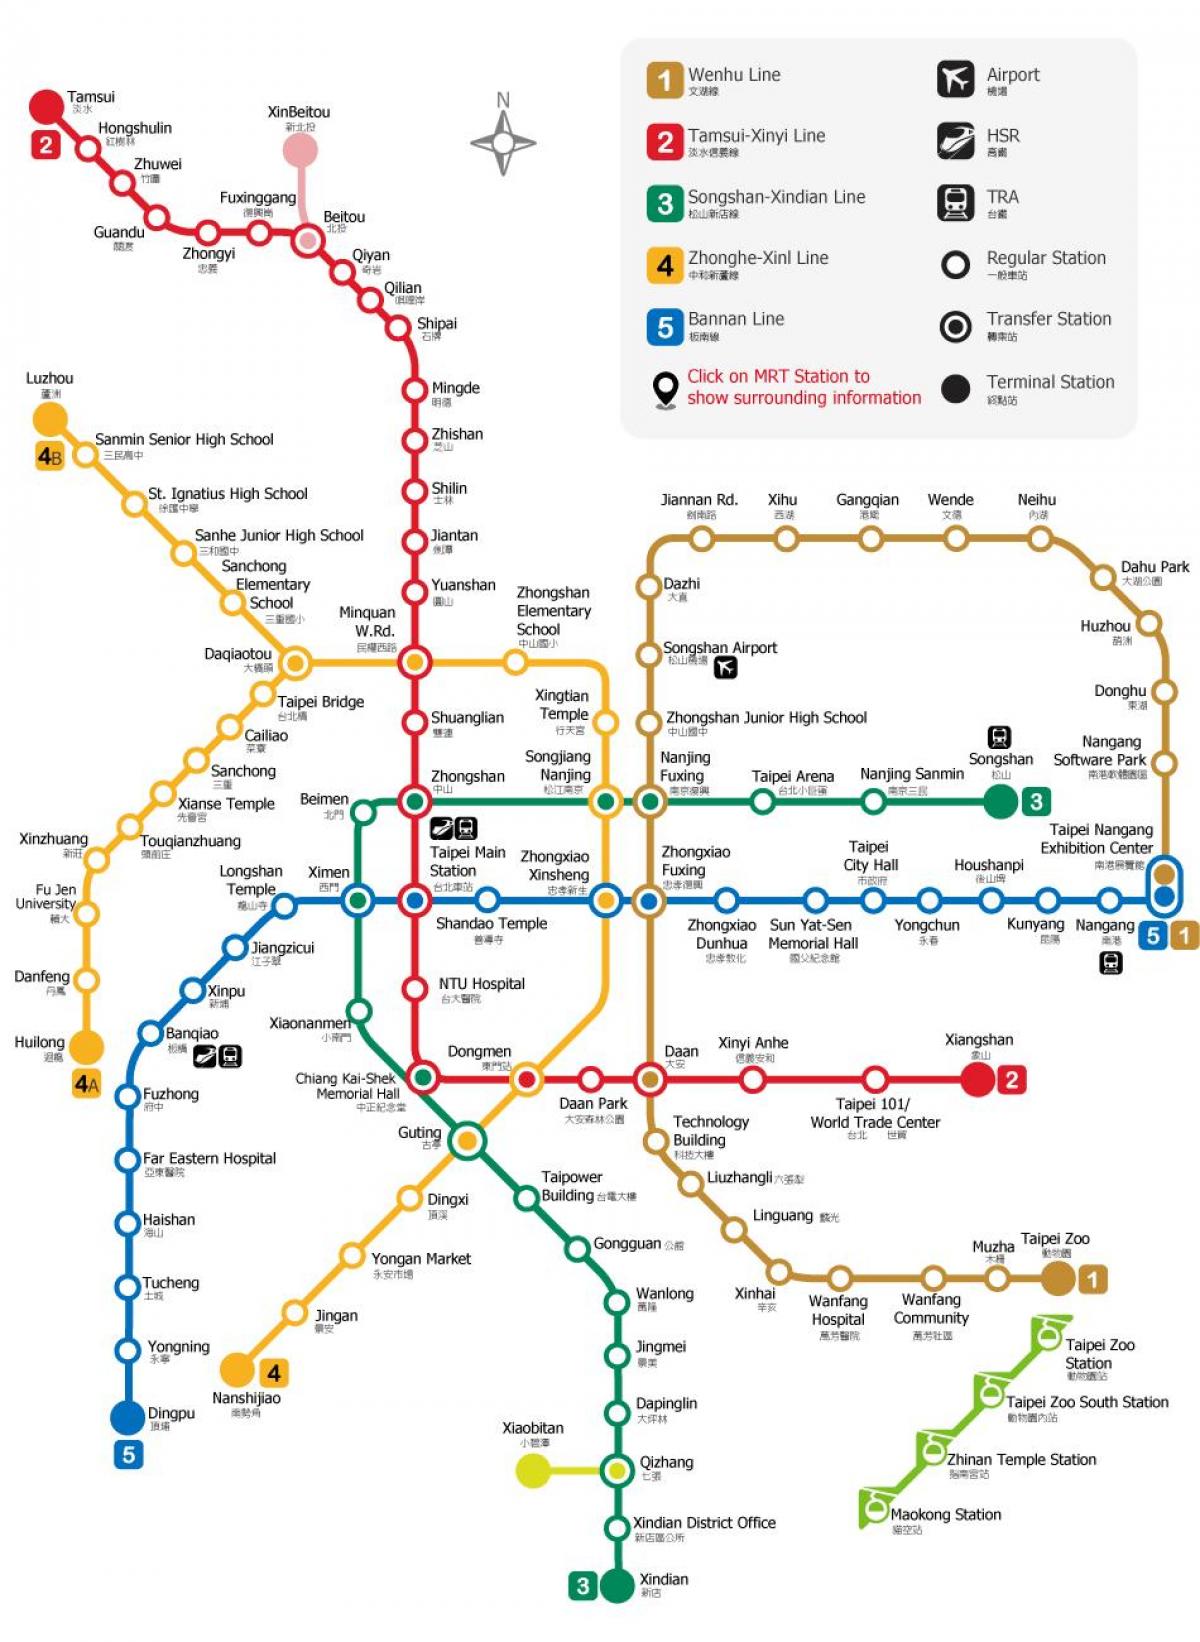 Ga xe lửa Đài Bắc là nơi đón tiếp hàng triệu hành khách mỗi năm trên toàn hệ thống tàu lửa của Đài Loan. Nếu bạn đang tìm kiếm một trung tâm giao thông thuận tiện để khám phá Đài Loan, không nên bỏ qua ga xe lửa Đài Bắc.